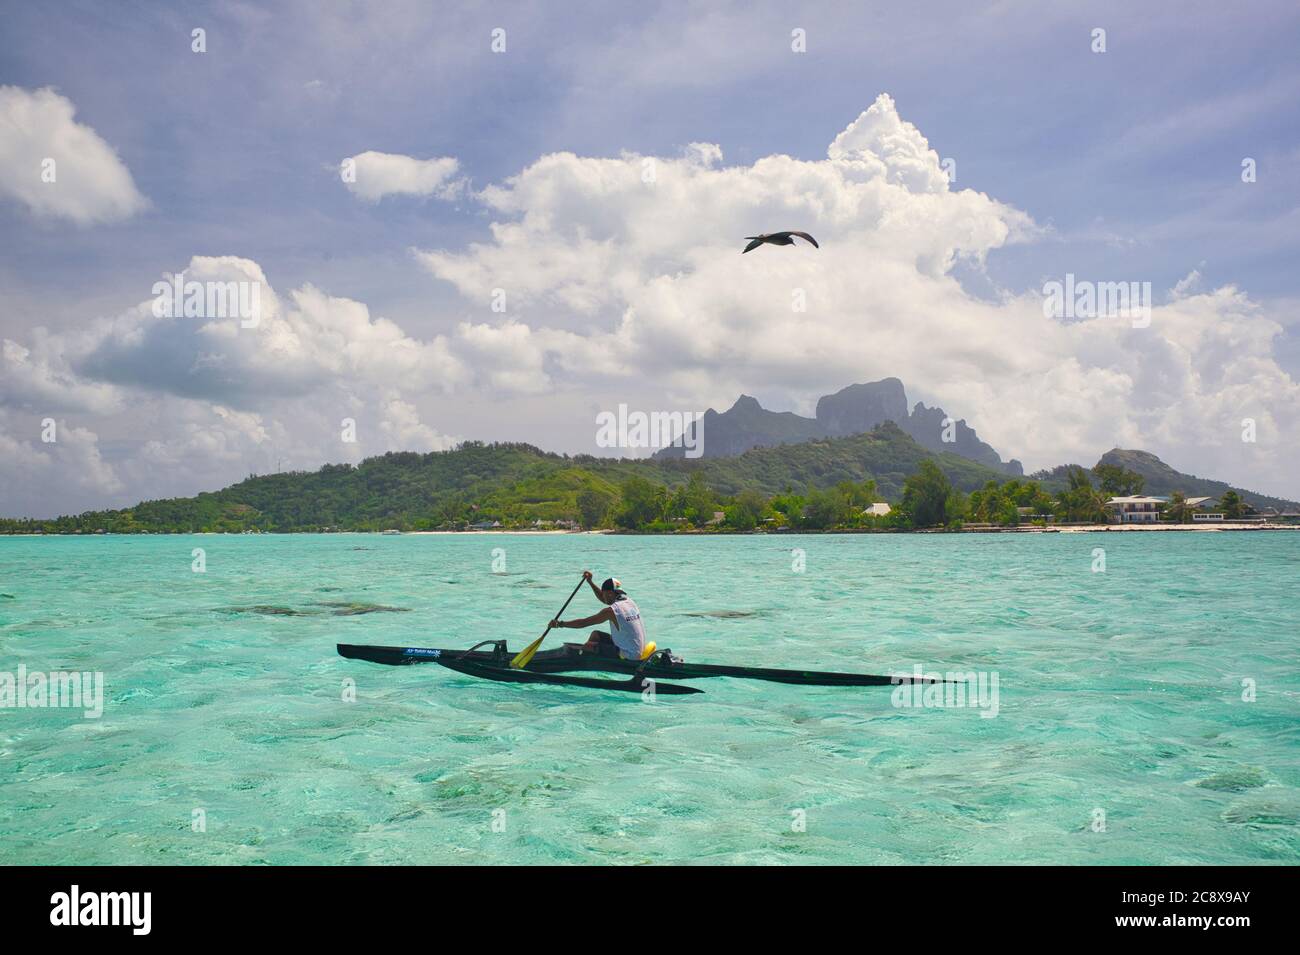 Bora Bora, Tahiti, Polynésie française. Un garçon local pagaie un canot moderne en saillie dans de l'eau claire translucide. Monter Otemanu ou Temanu en arrière-plan Banque D'Images